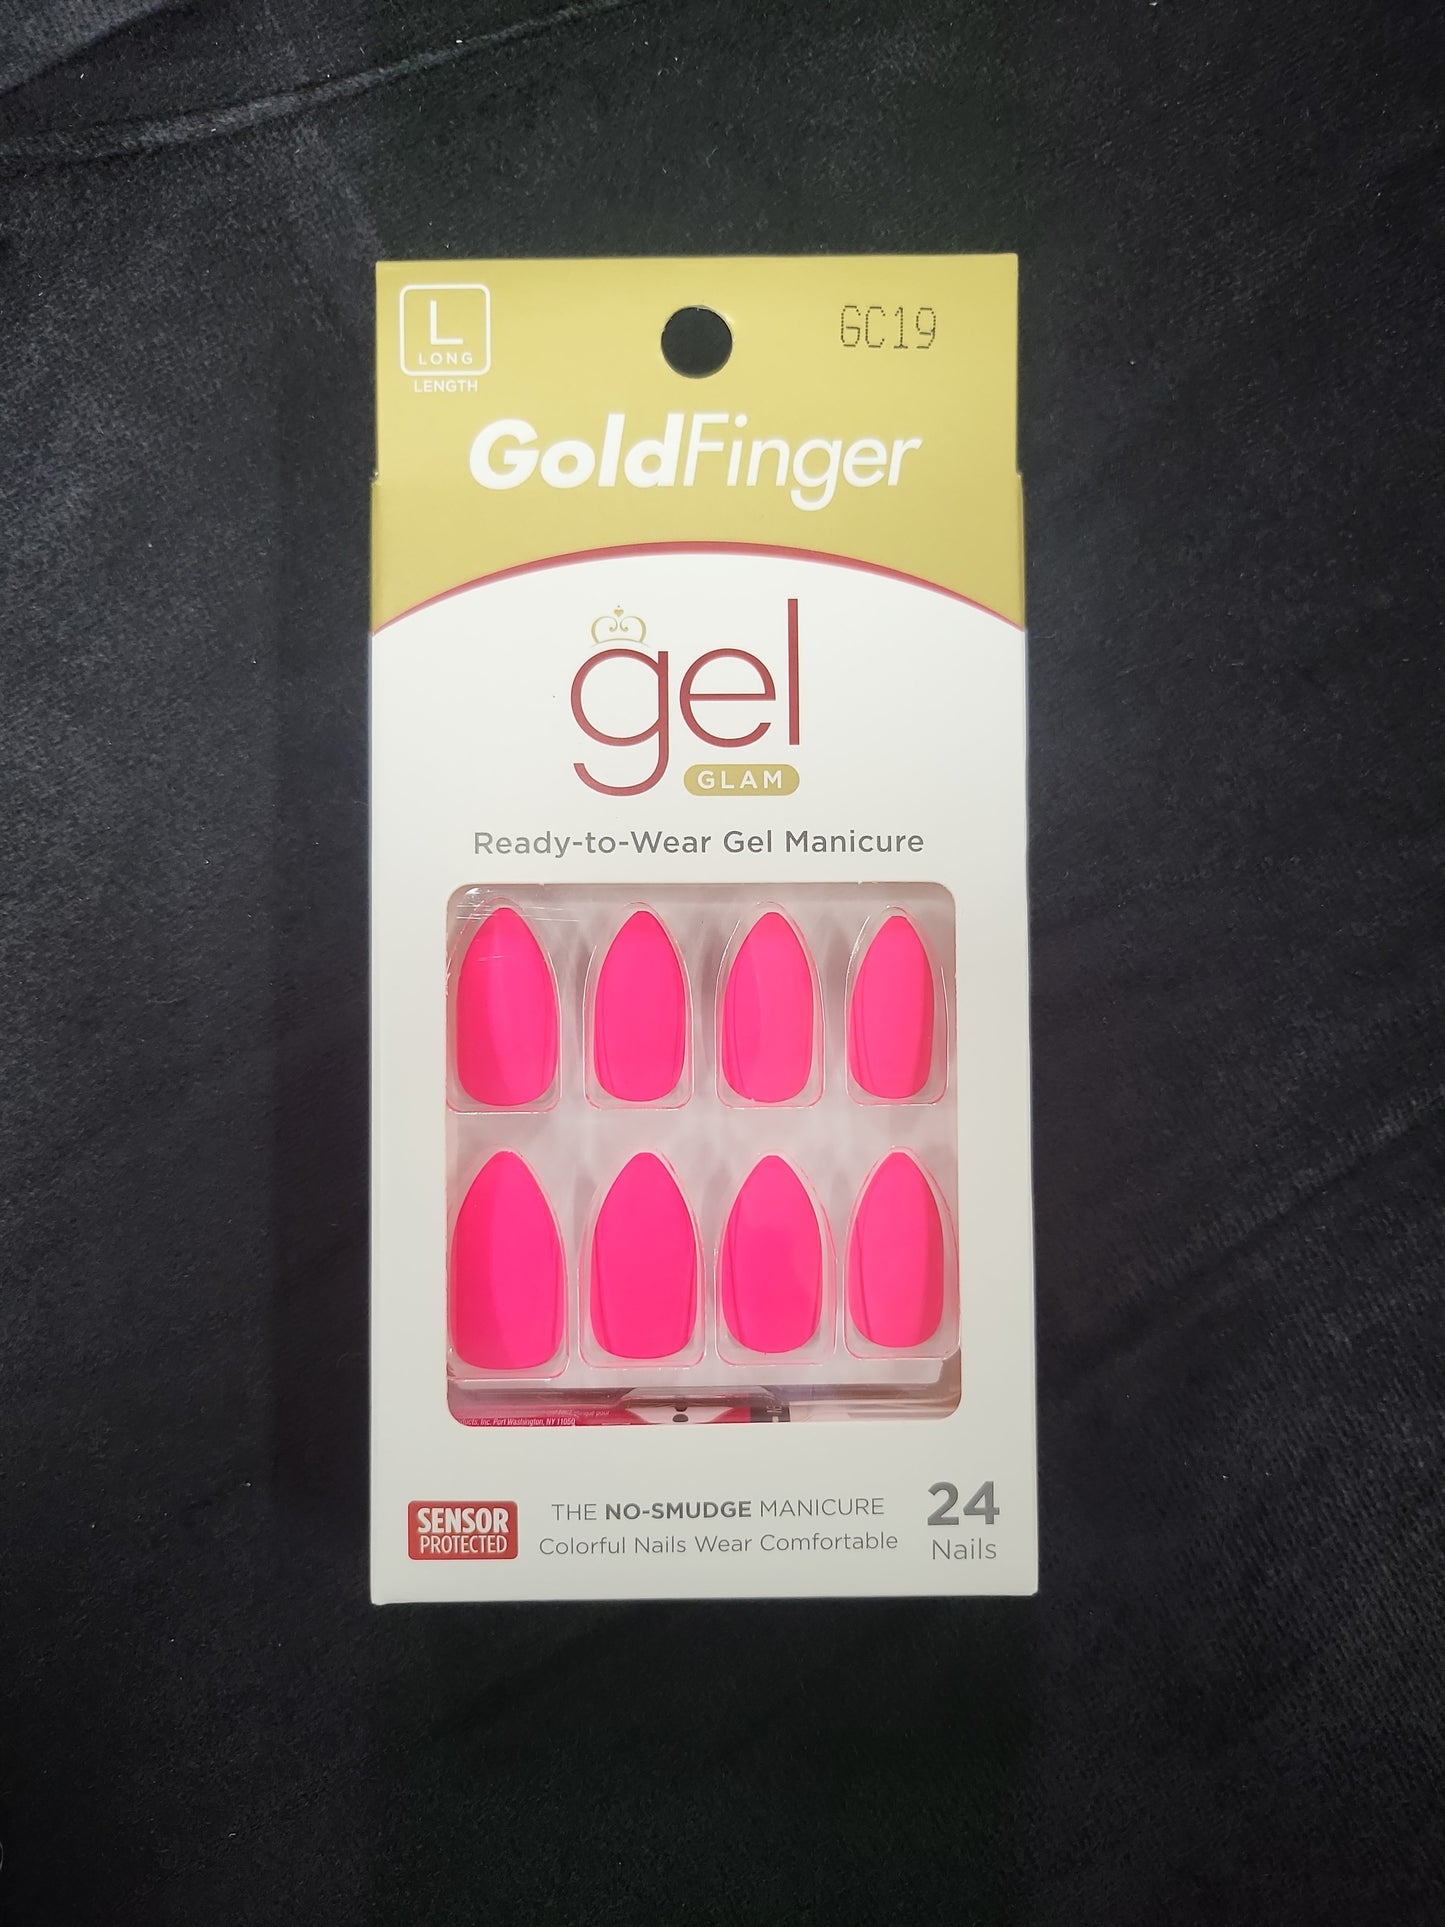 GolgFinger Gel Glam GC19